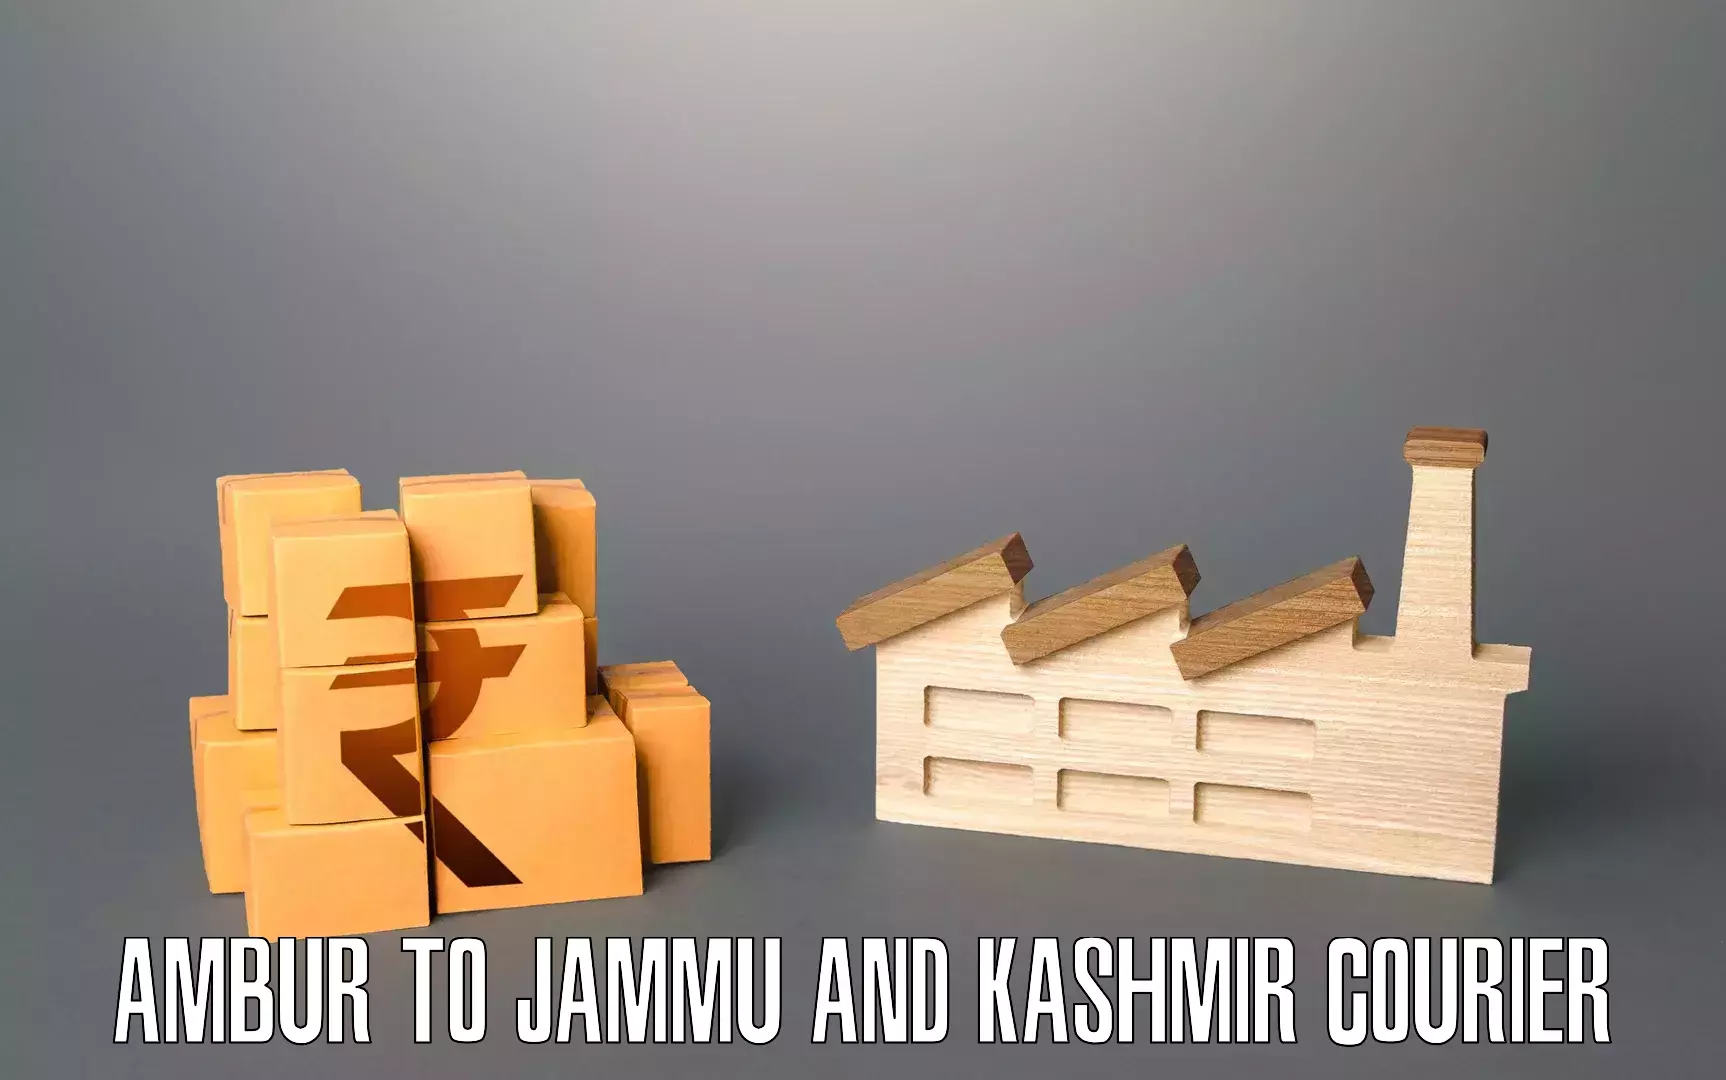 Furniture transport specialists Ambur to Jammu and Kashmir